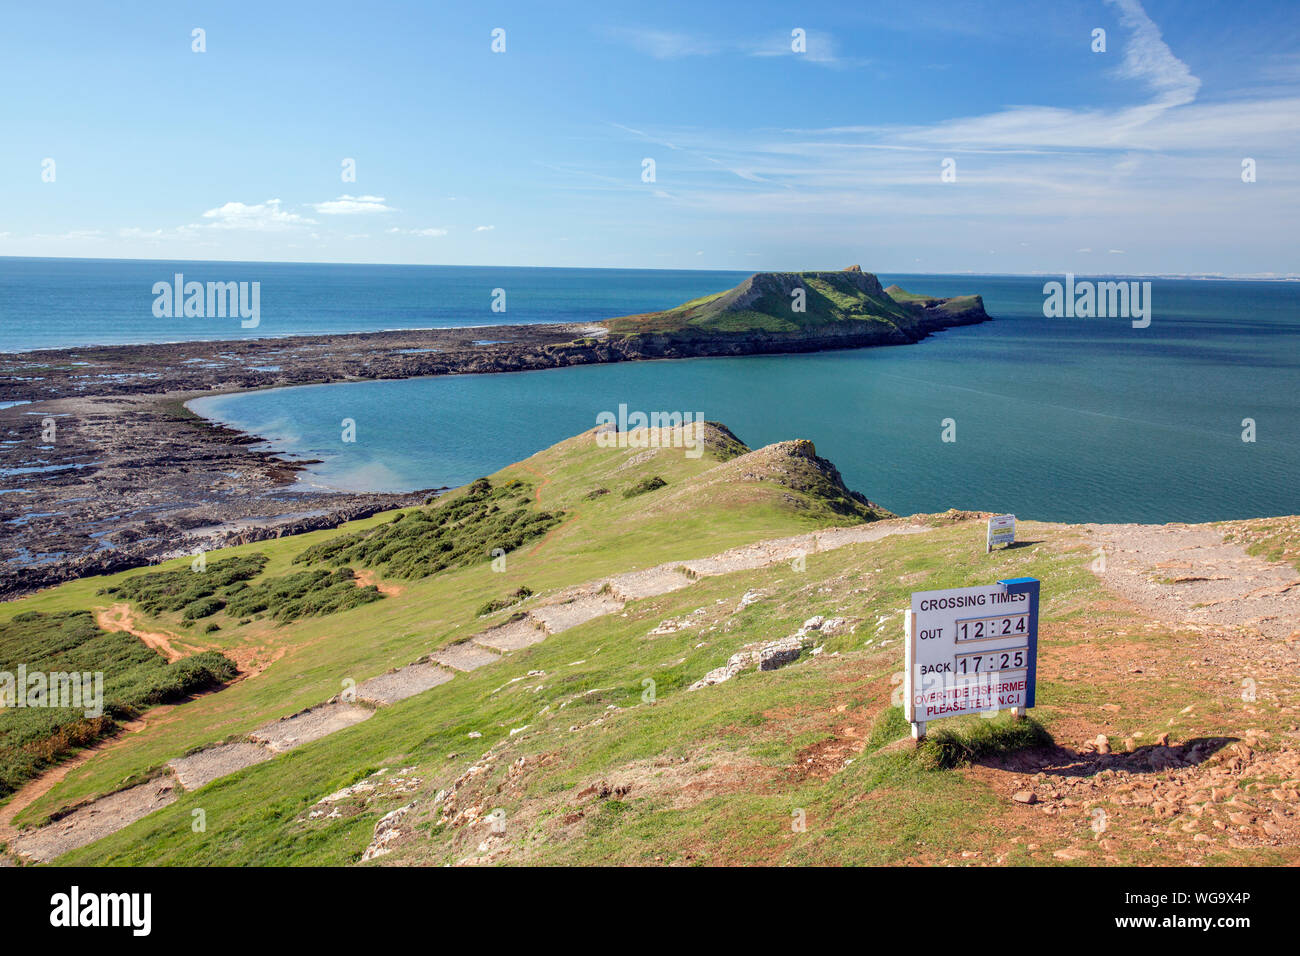 Segnale di avvertimento dando orari delle maree quando è possibile attraversare a Worms testa sulla Penisola di Gower, South Wales, Regno Unito Foto Stock